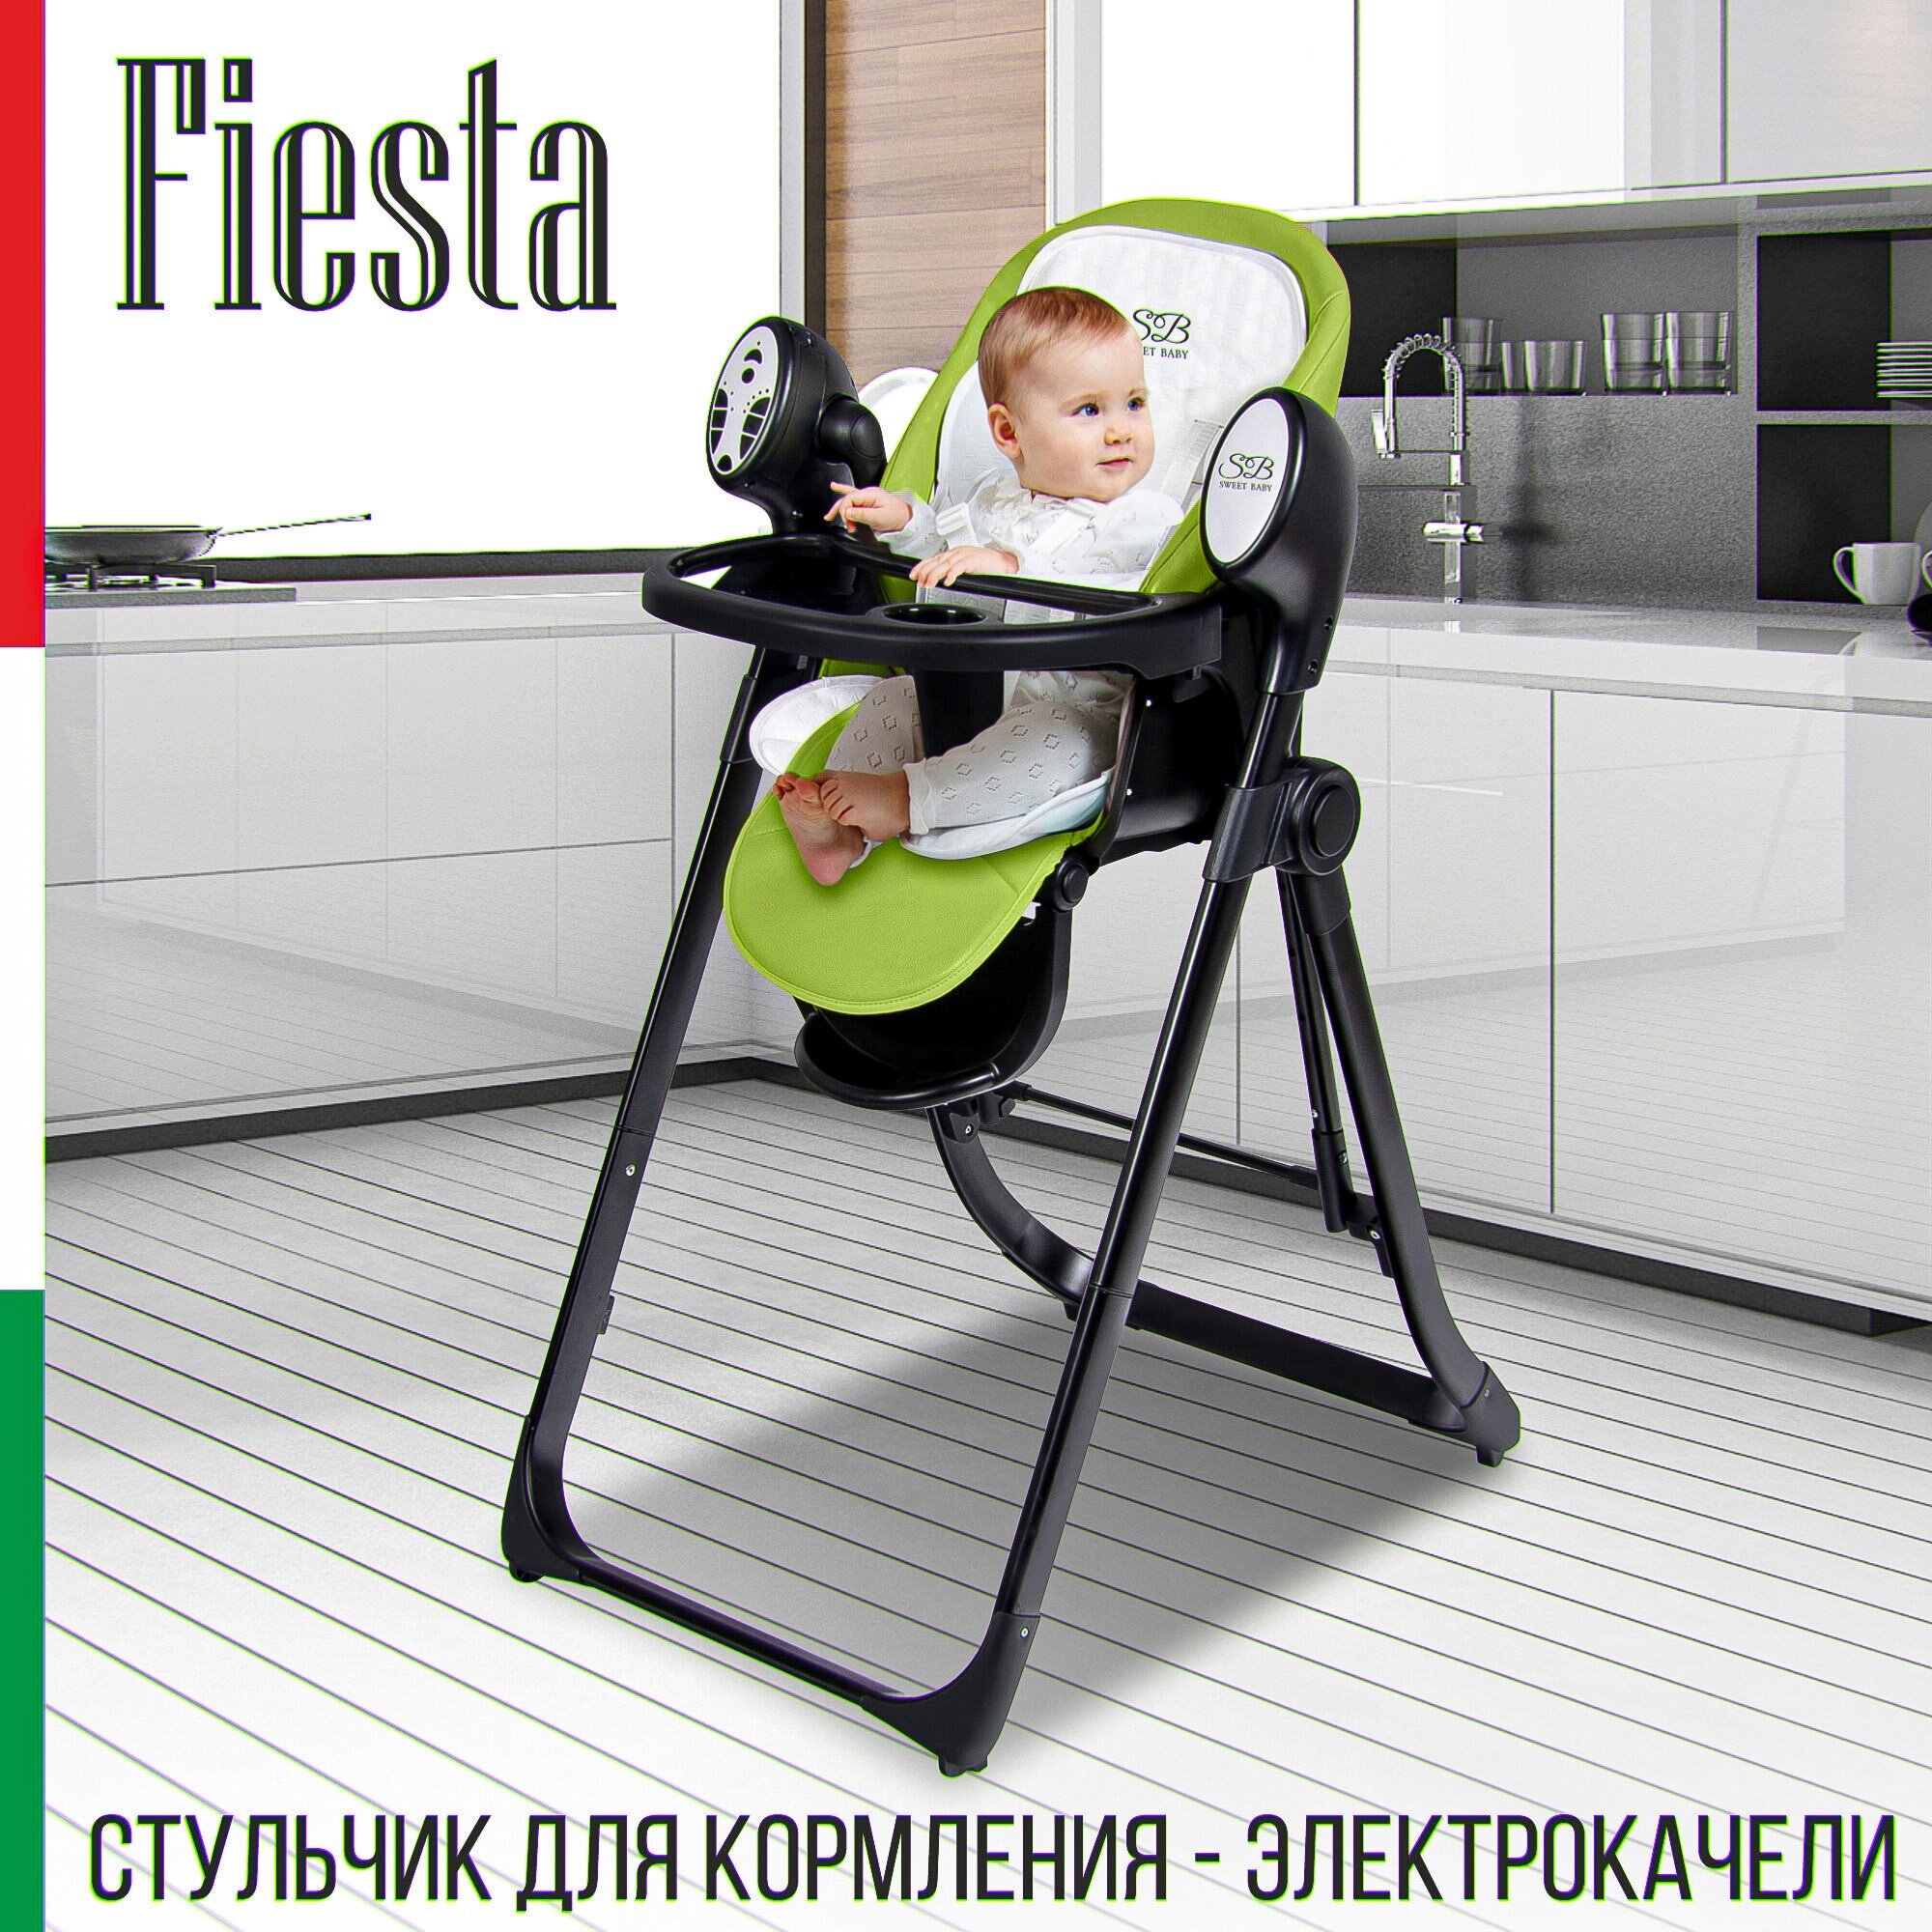 Стульчик для кормления - Электрокачели Sweet Baby Fiesta Black Green